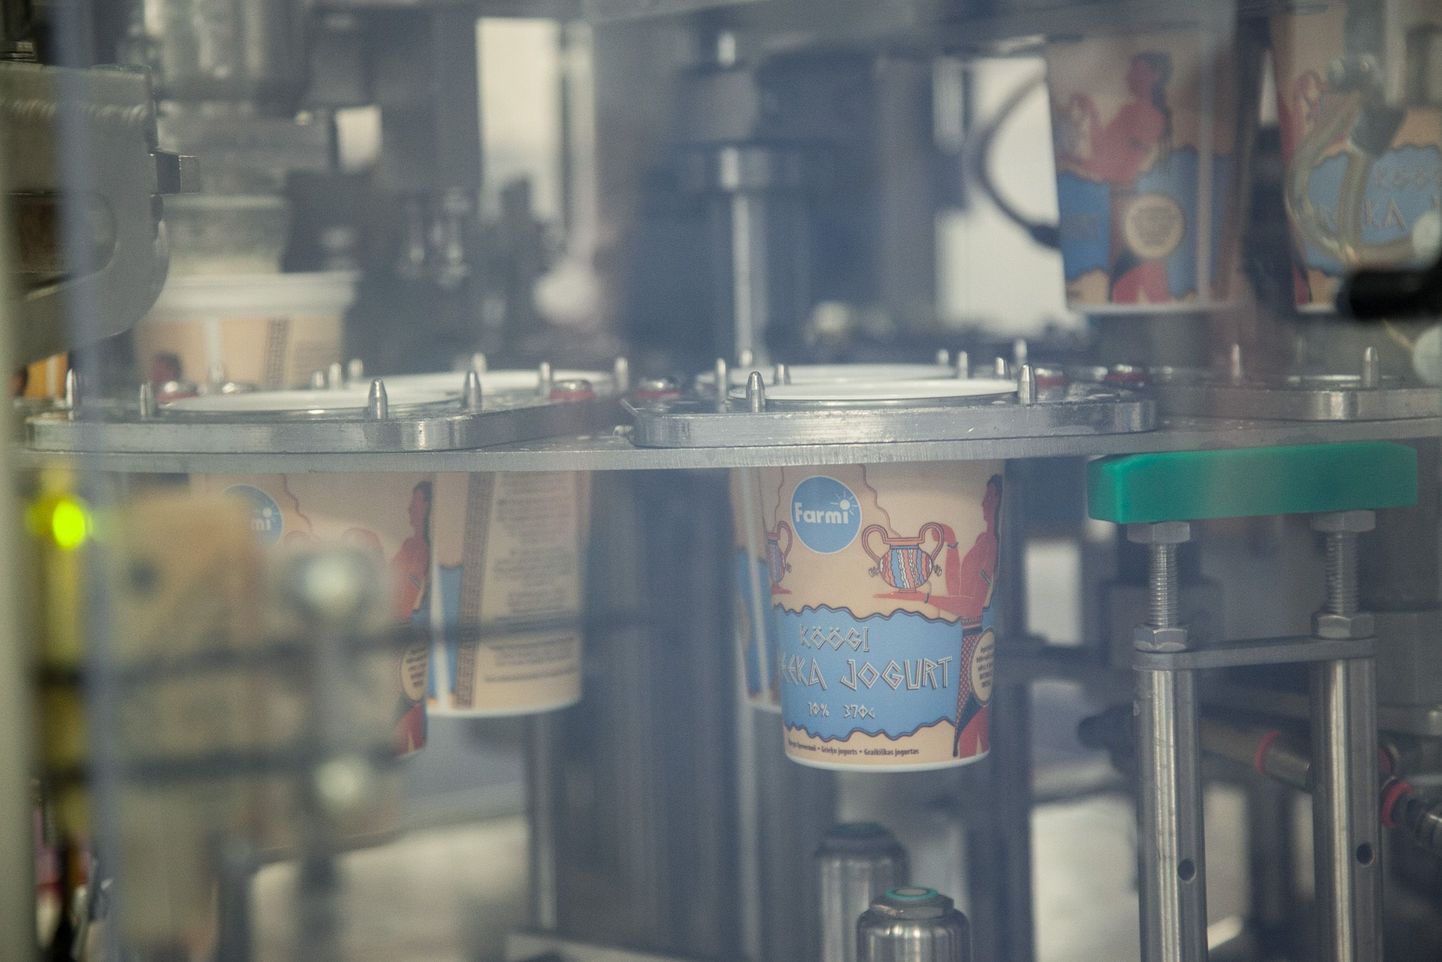 Стаканчики с йогуртом плывут за полупрозрачным окошком: технология велит прикрывать готовящийся напиток от света.